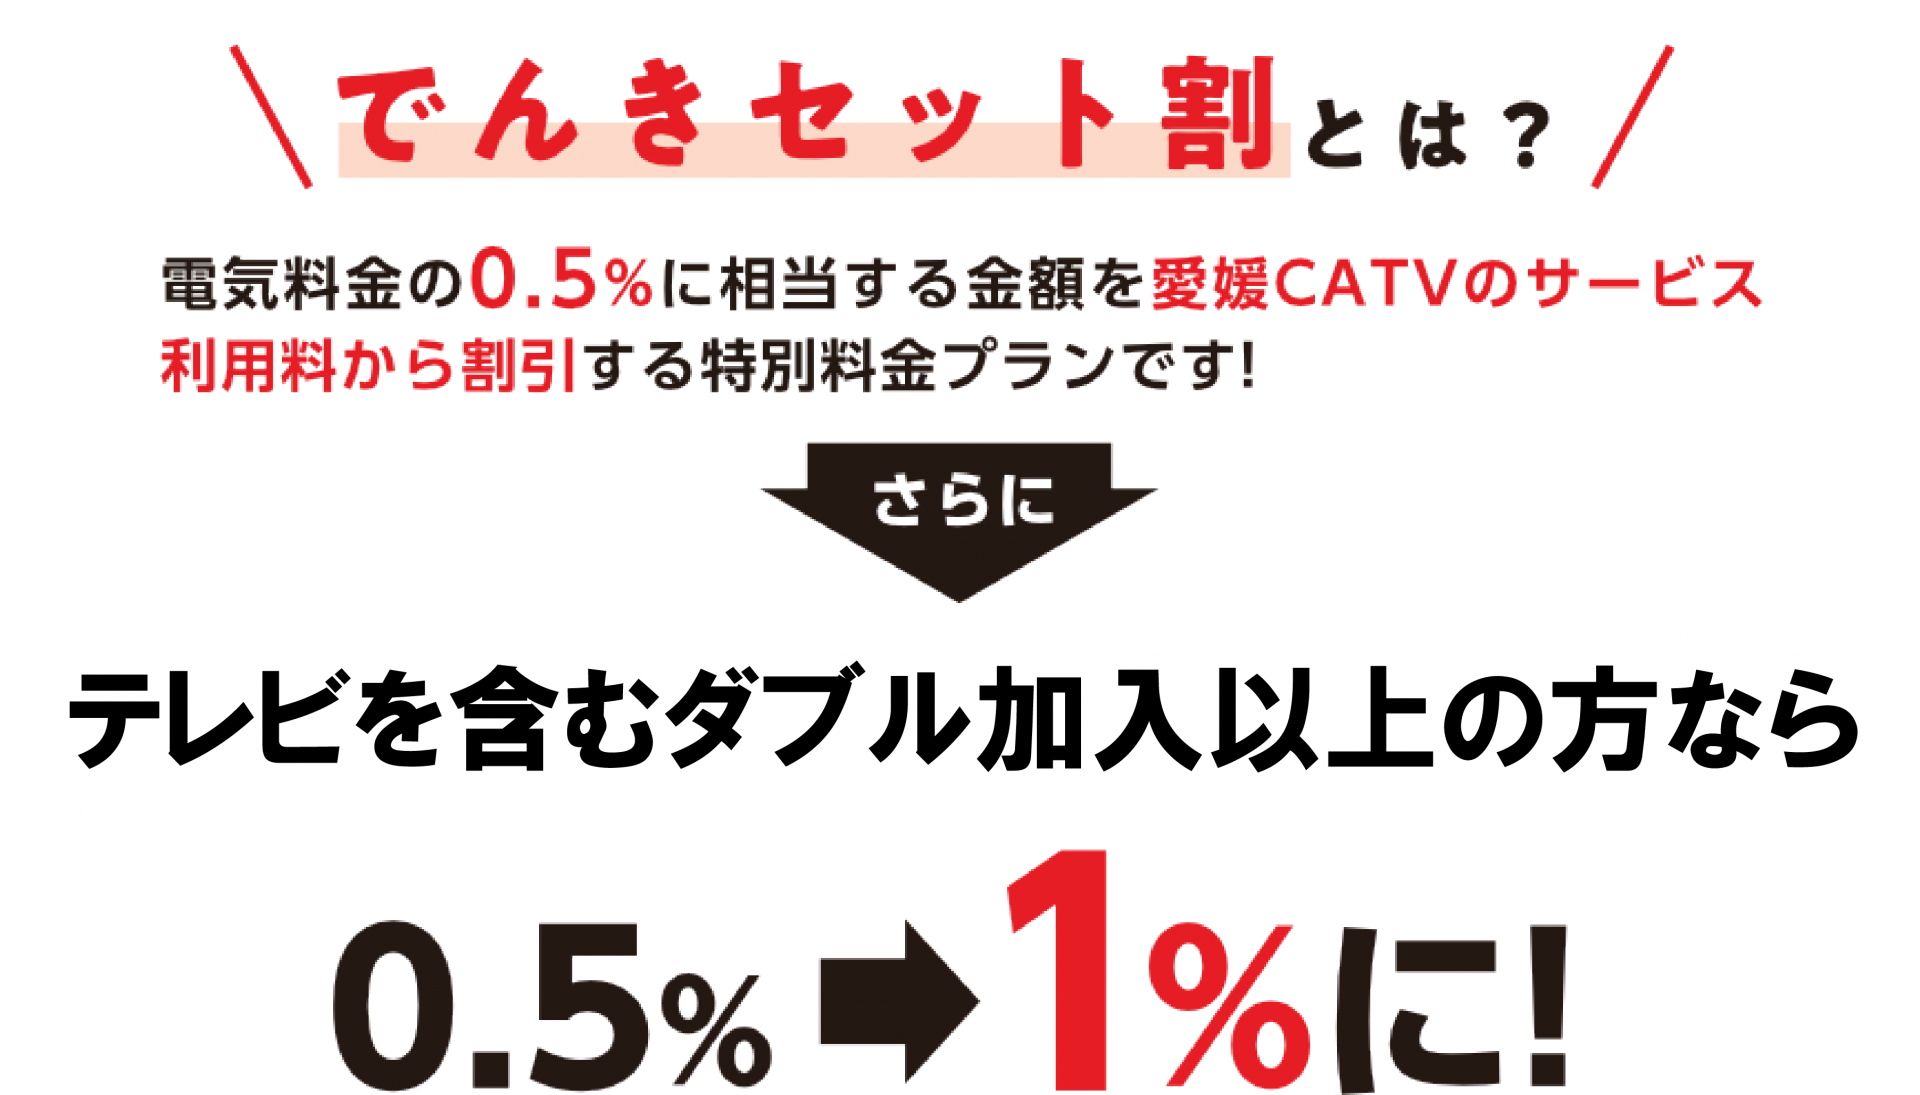 「でんきセット割」で愛媛CATVサービス利用料からも特別な割引!